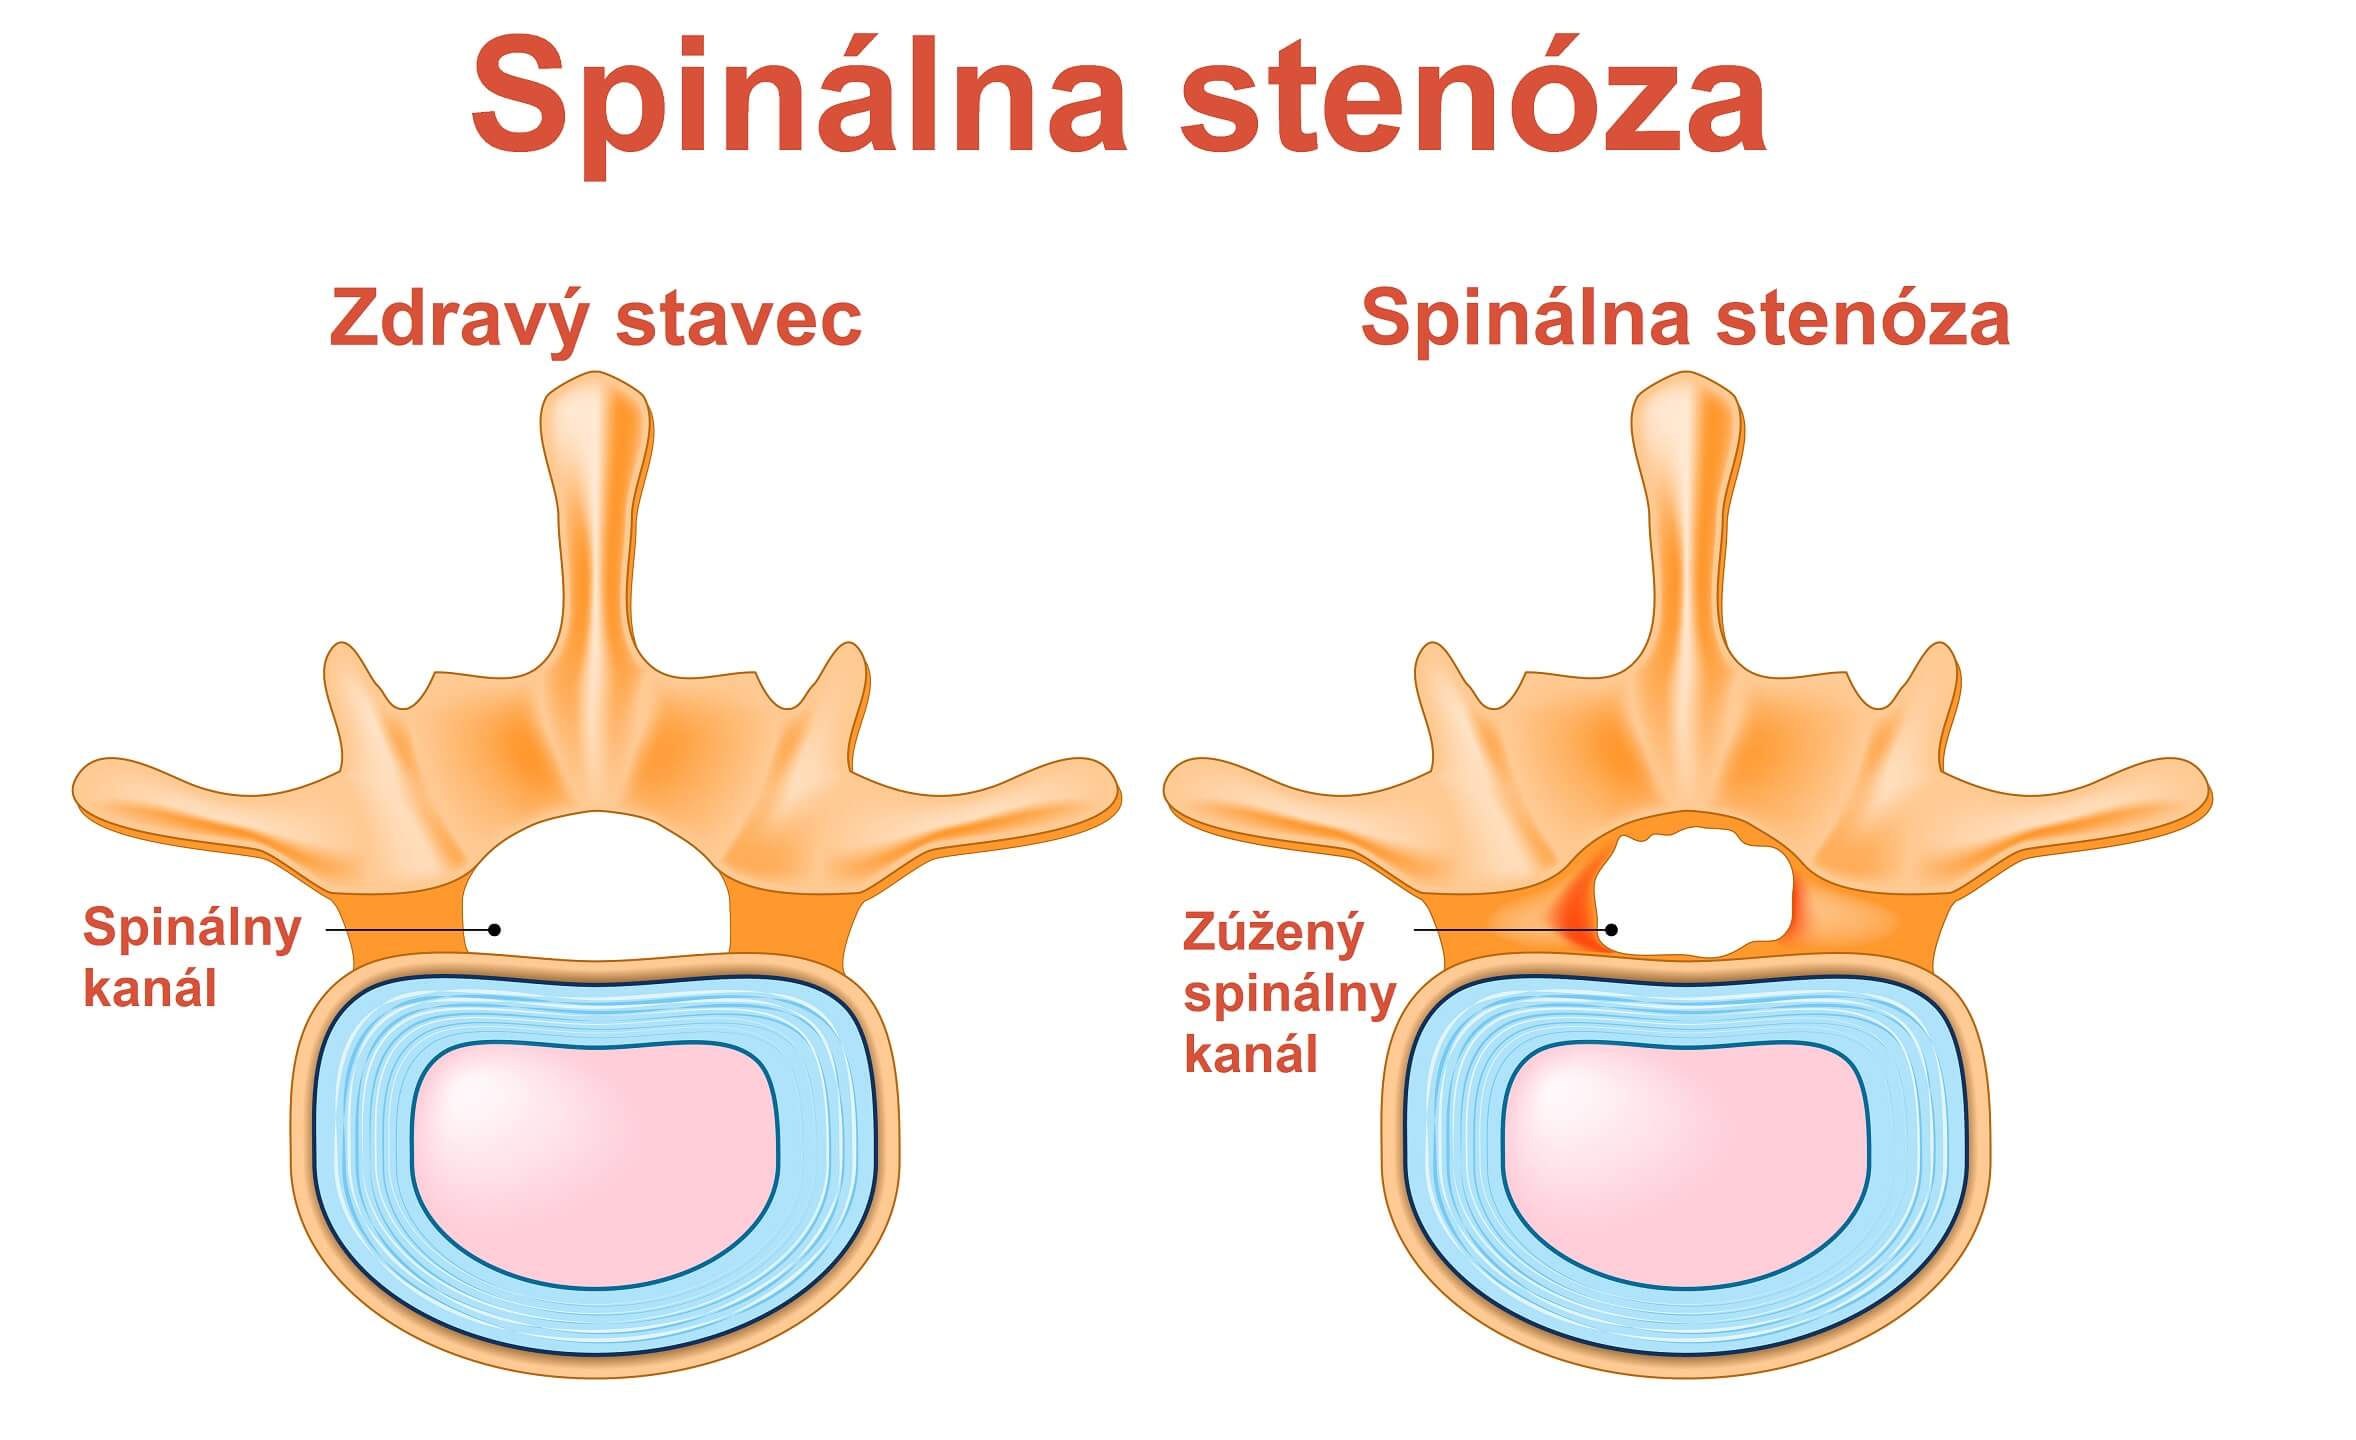 Spinalna stenoza_1